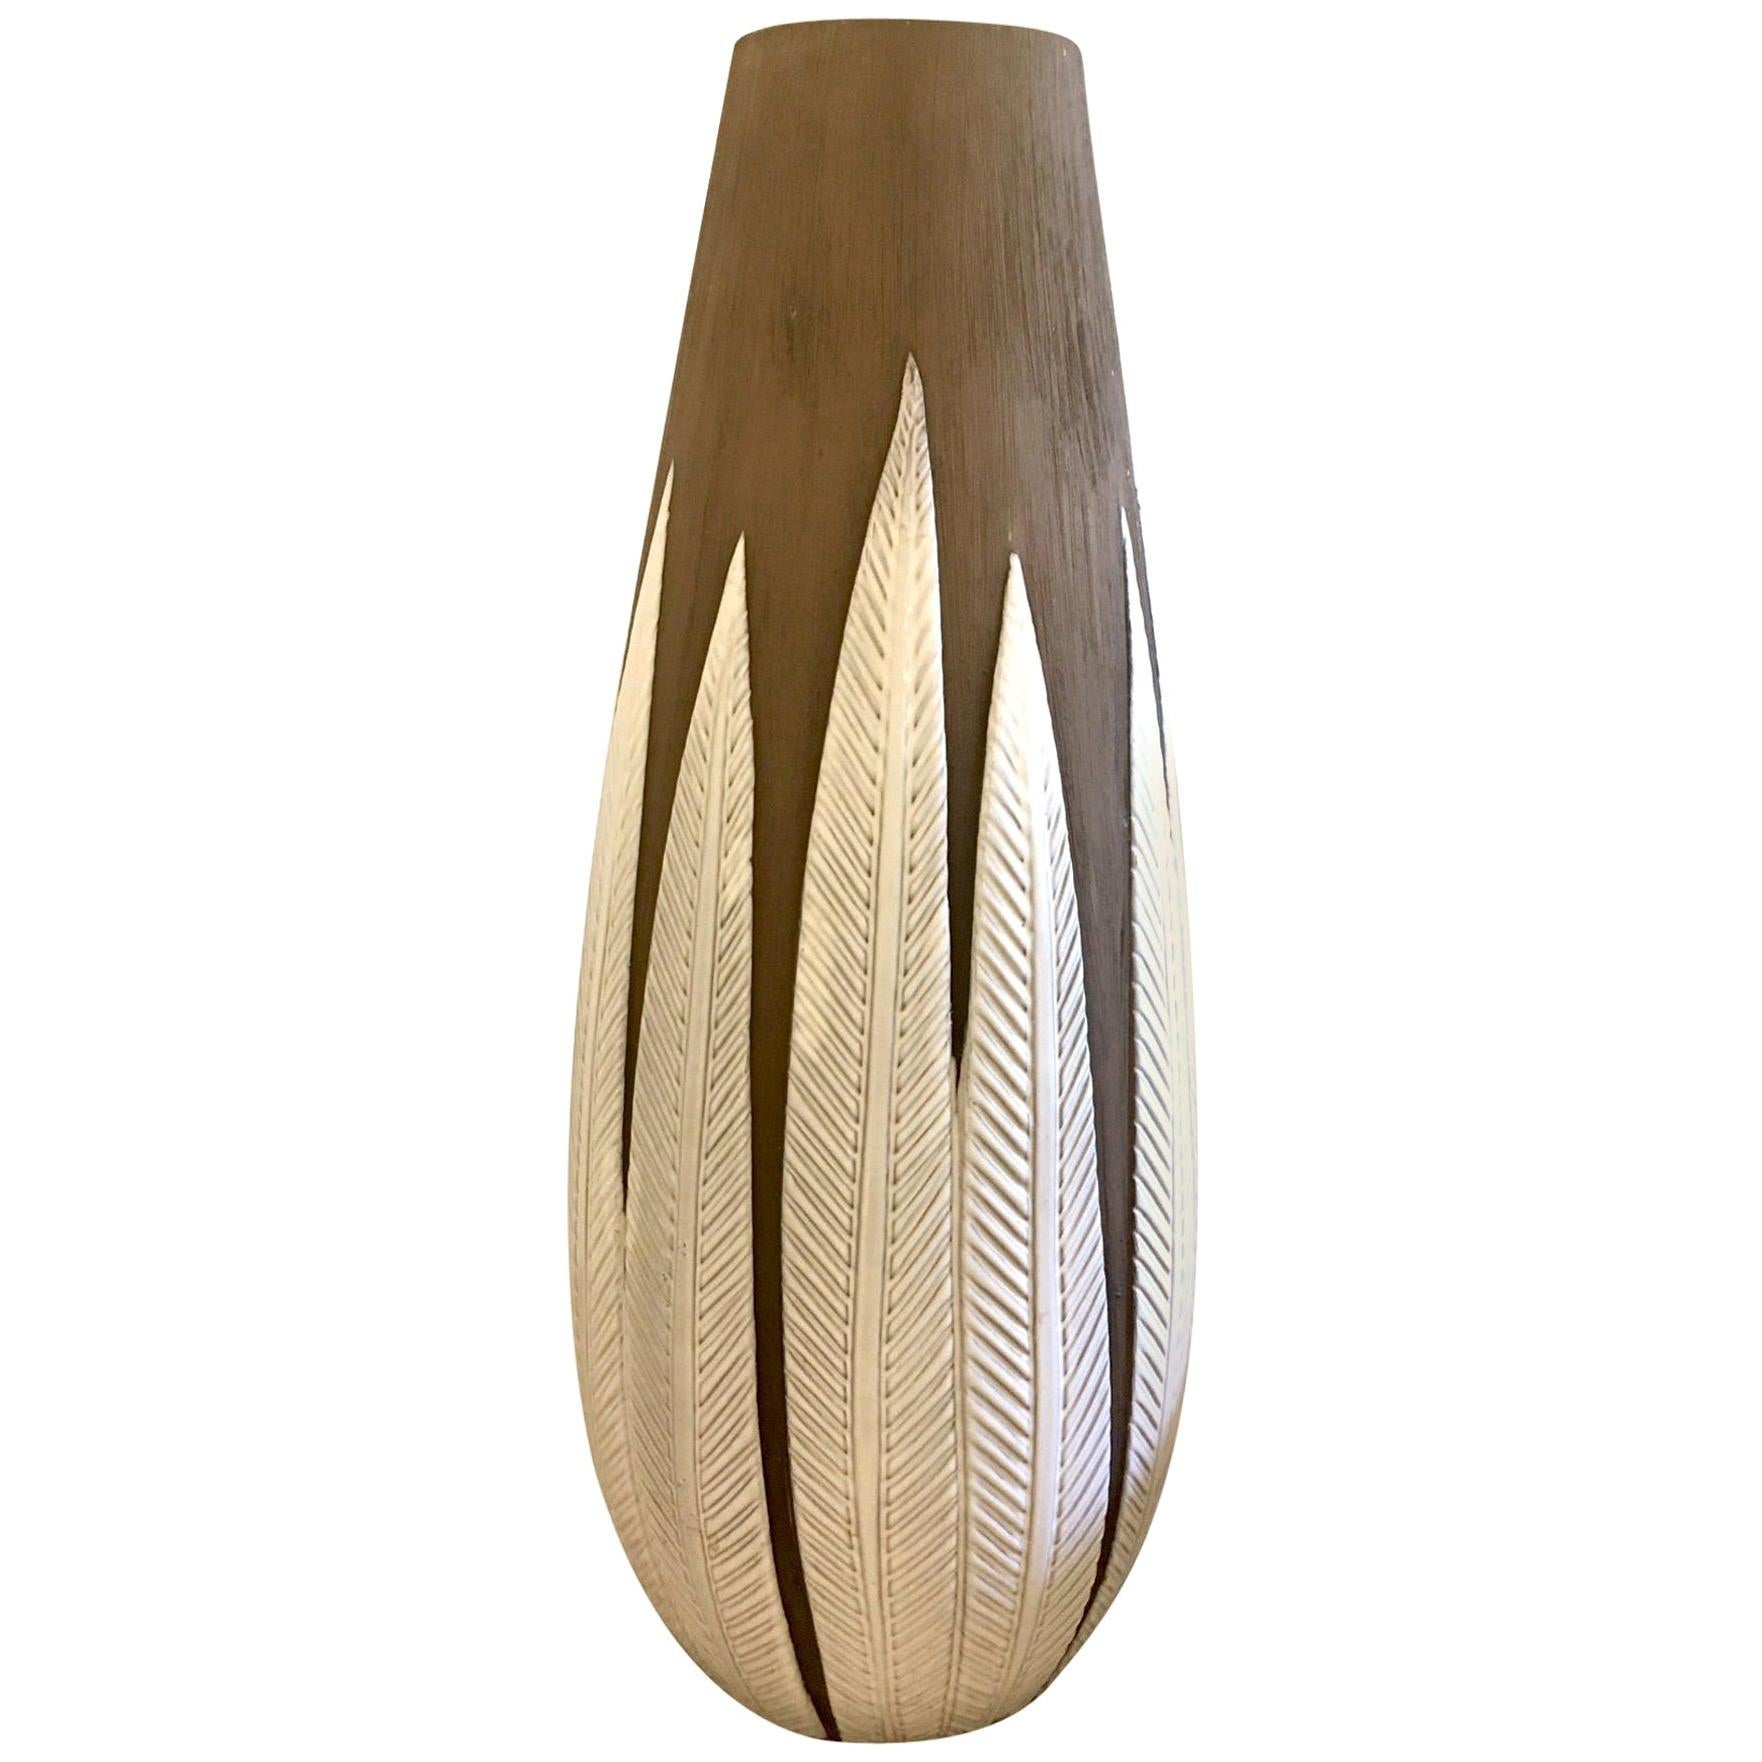 Anna-Lisa Thomson "Paprika" Ceramic Floor Vase